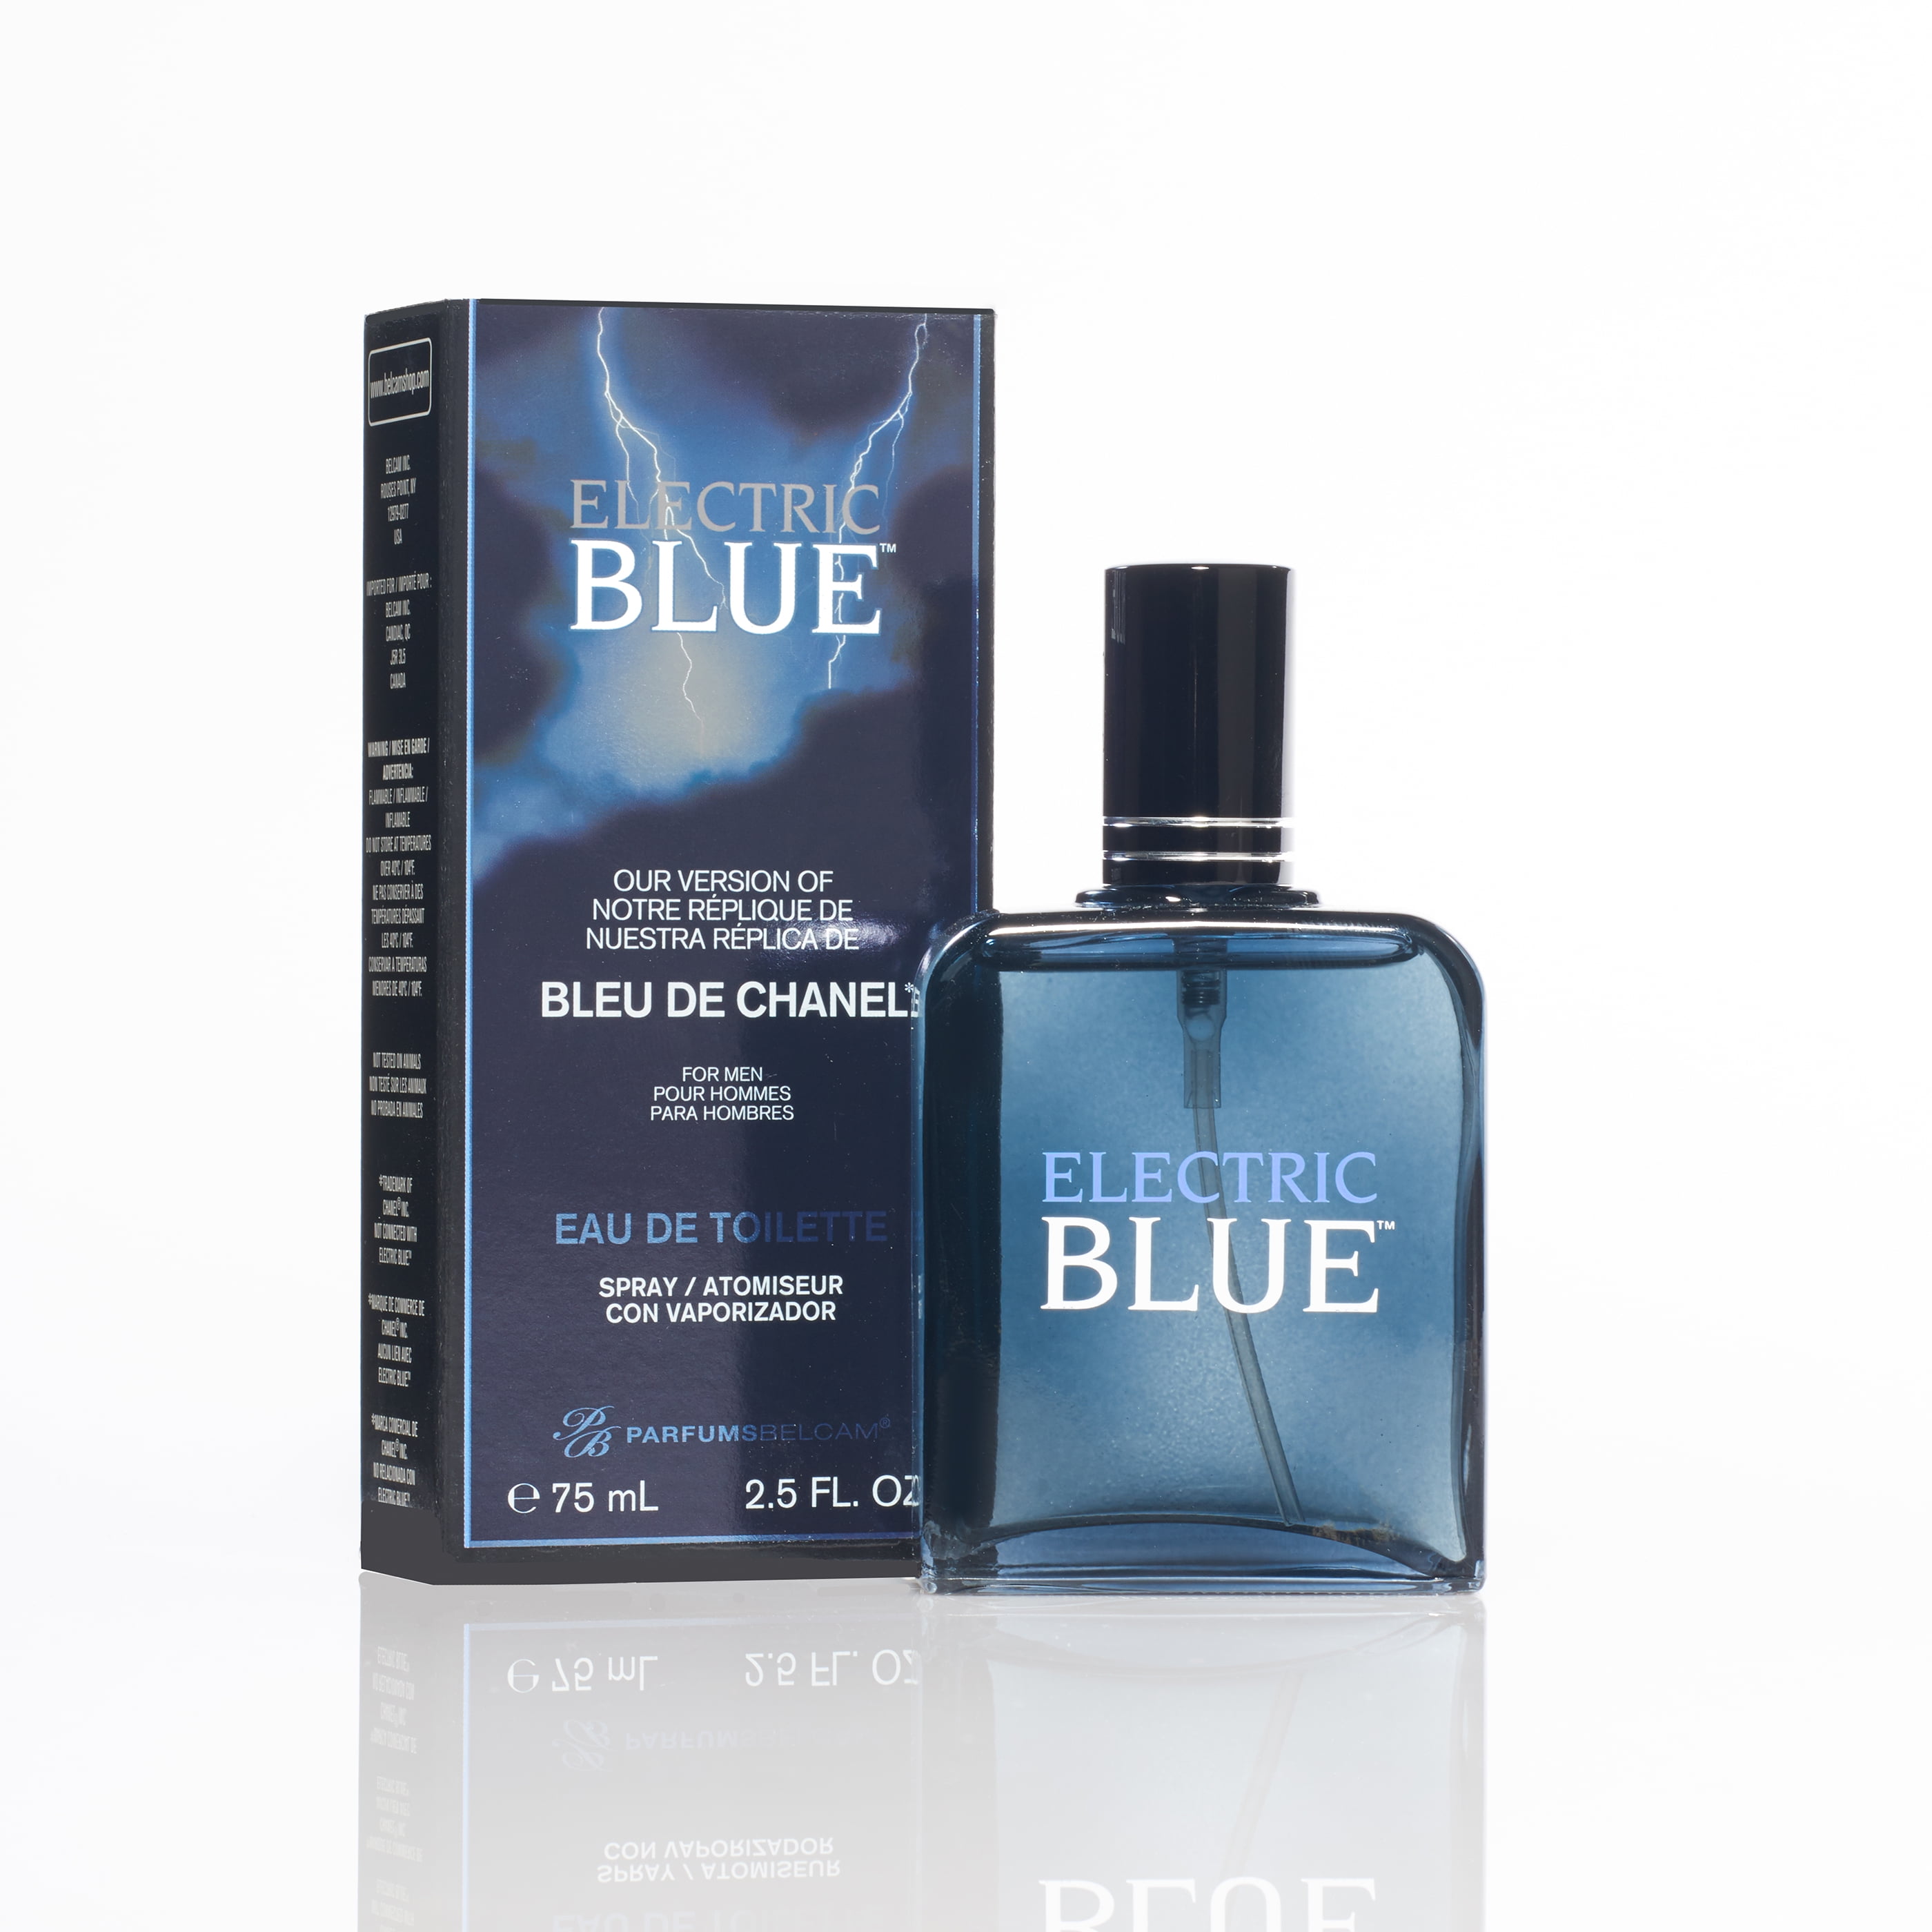 Parfums Belcam Electric Blue Eau de Toilette, Cologne for Men, 2.5 Oz Full  Size 